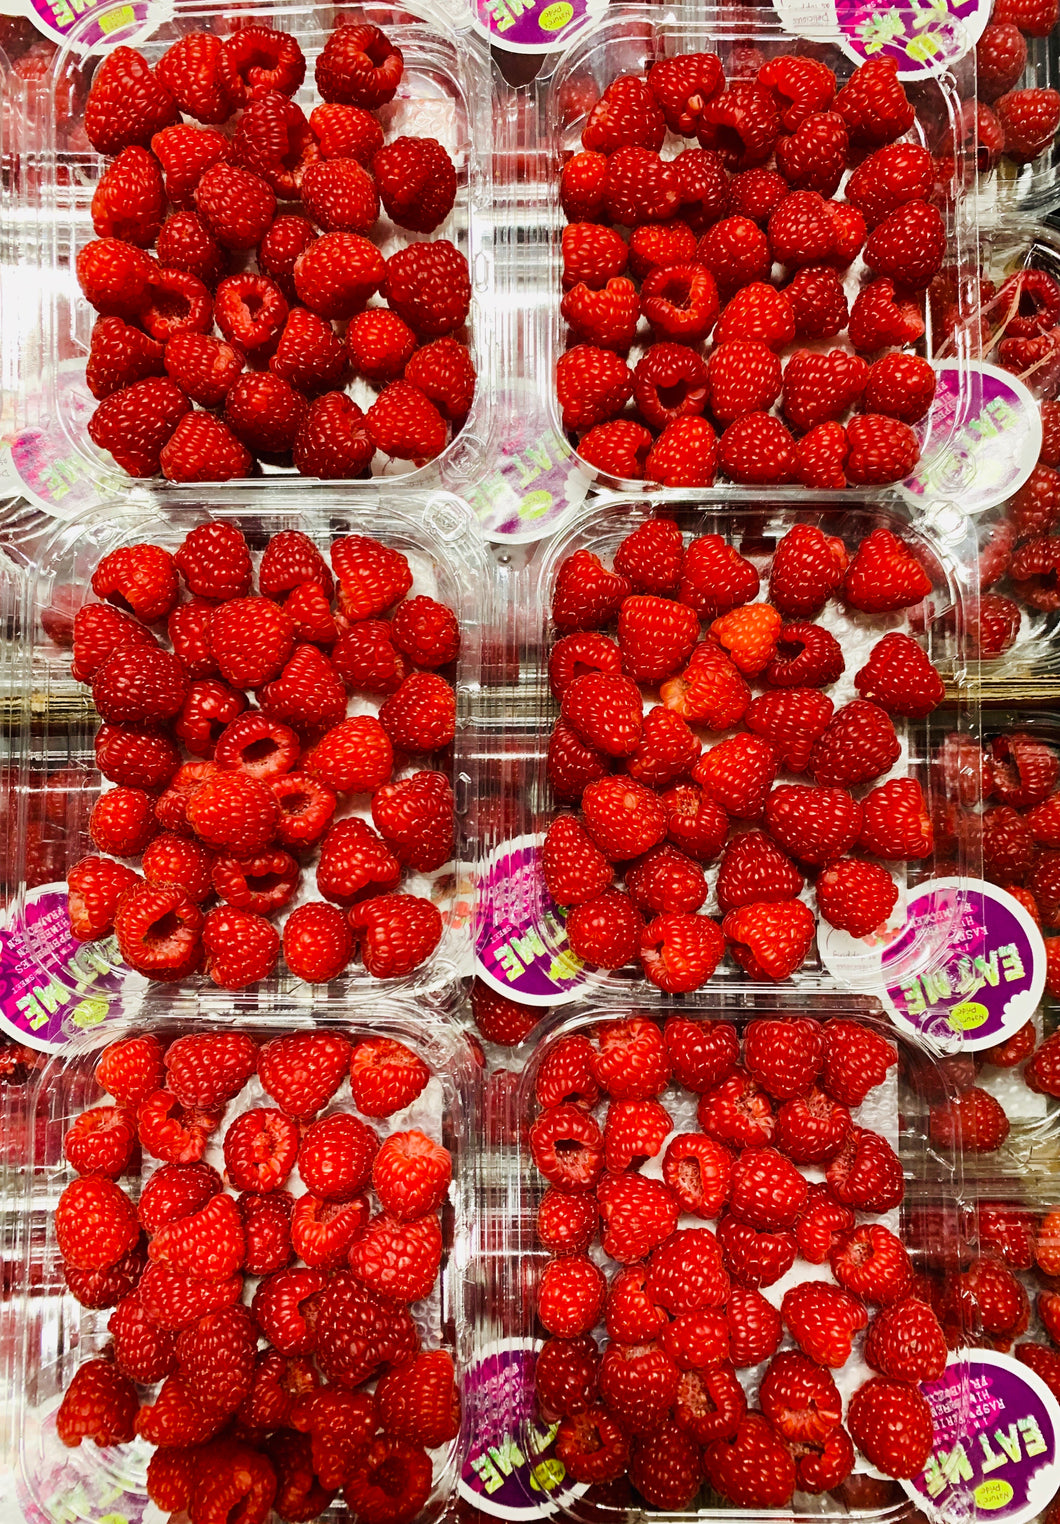 Raspberries - punnet